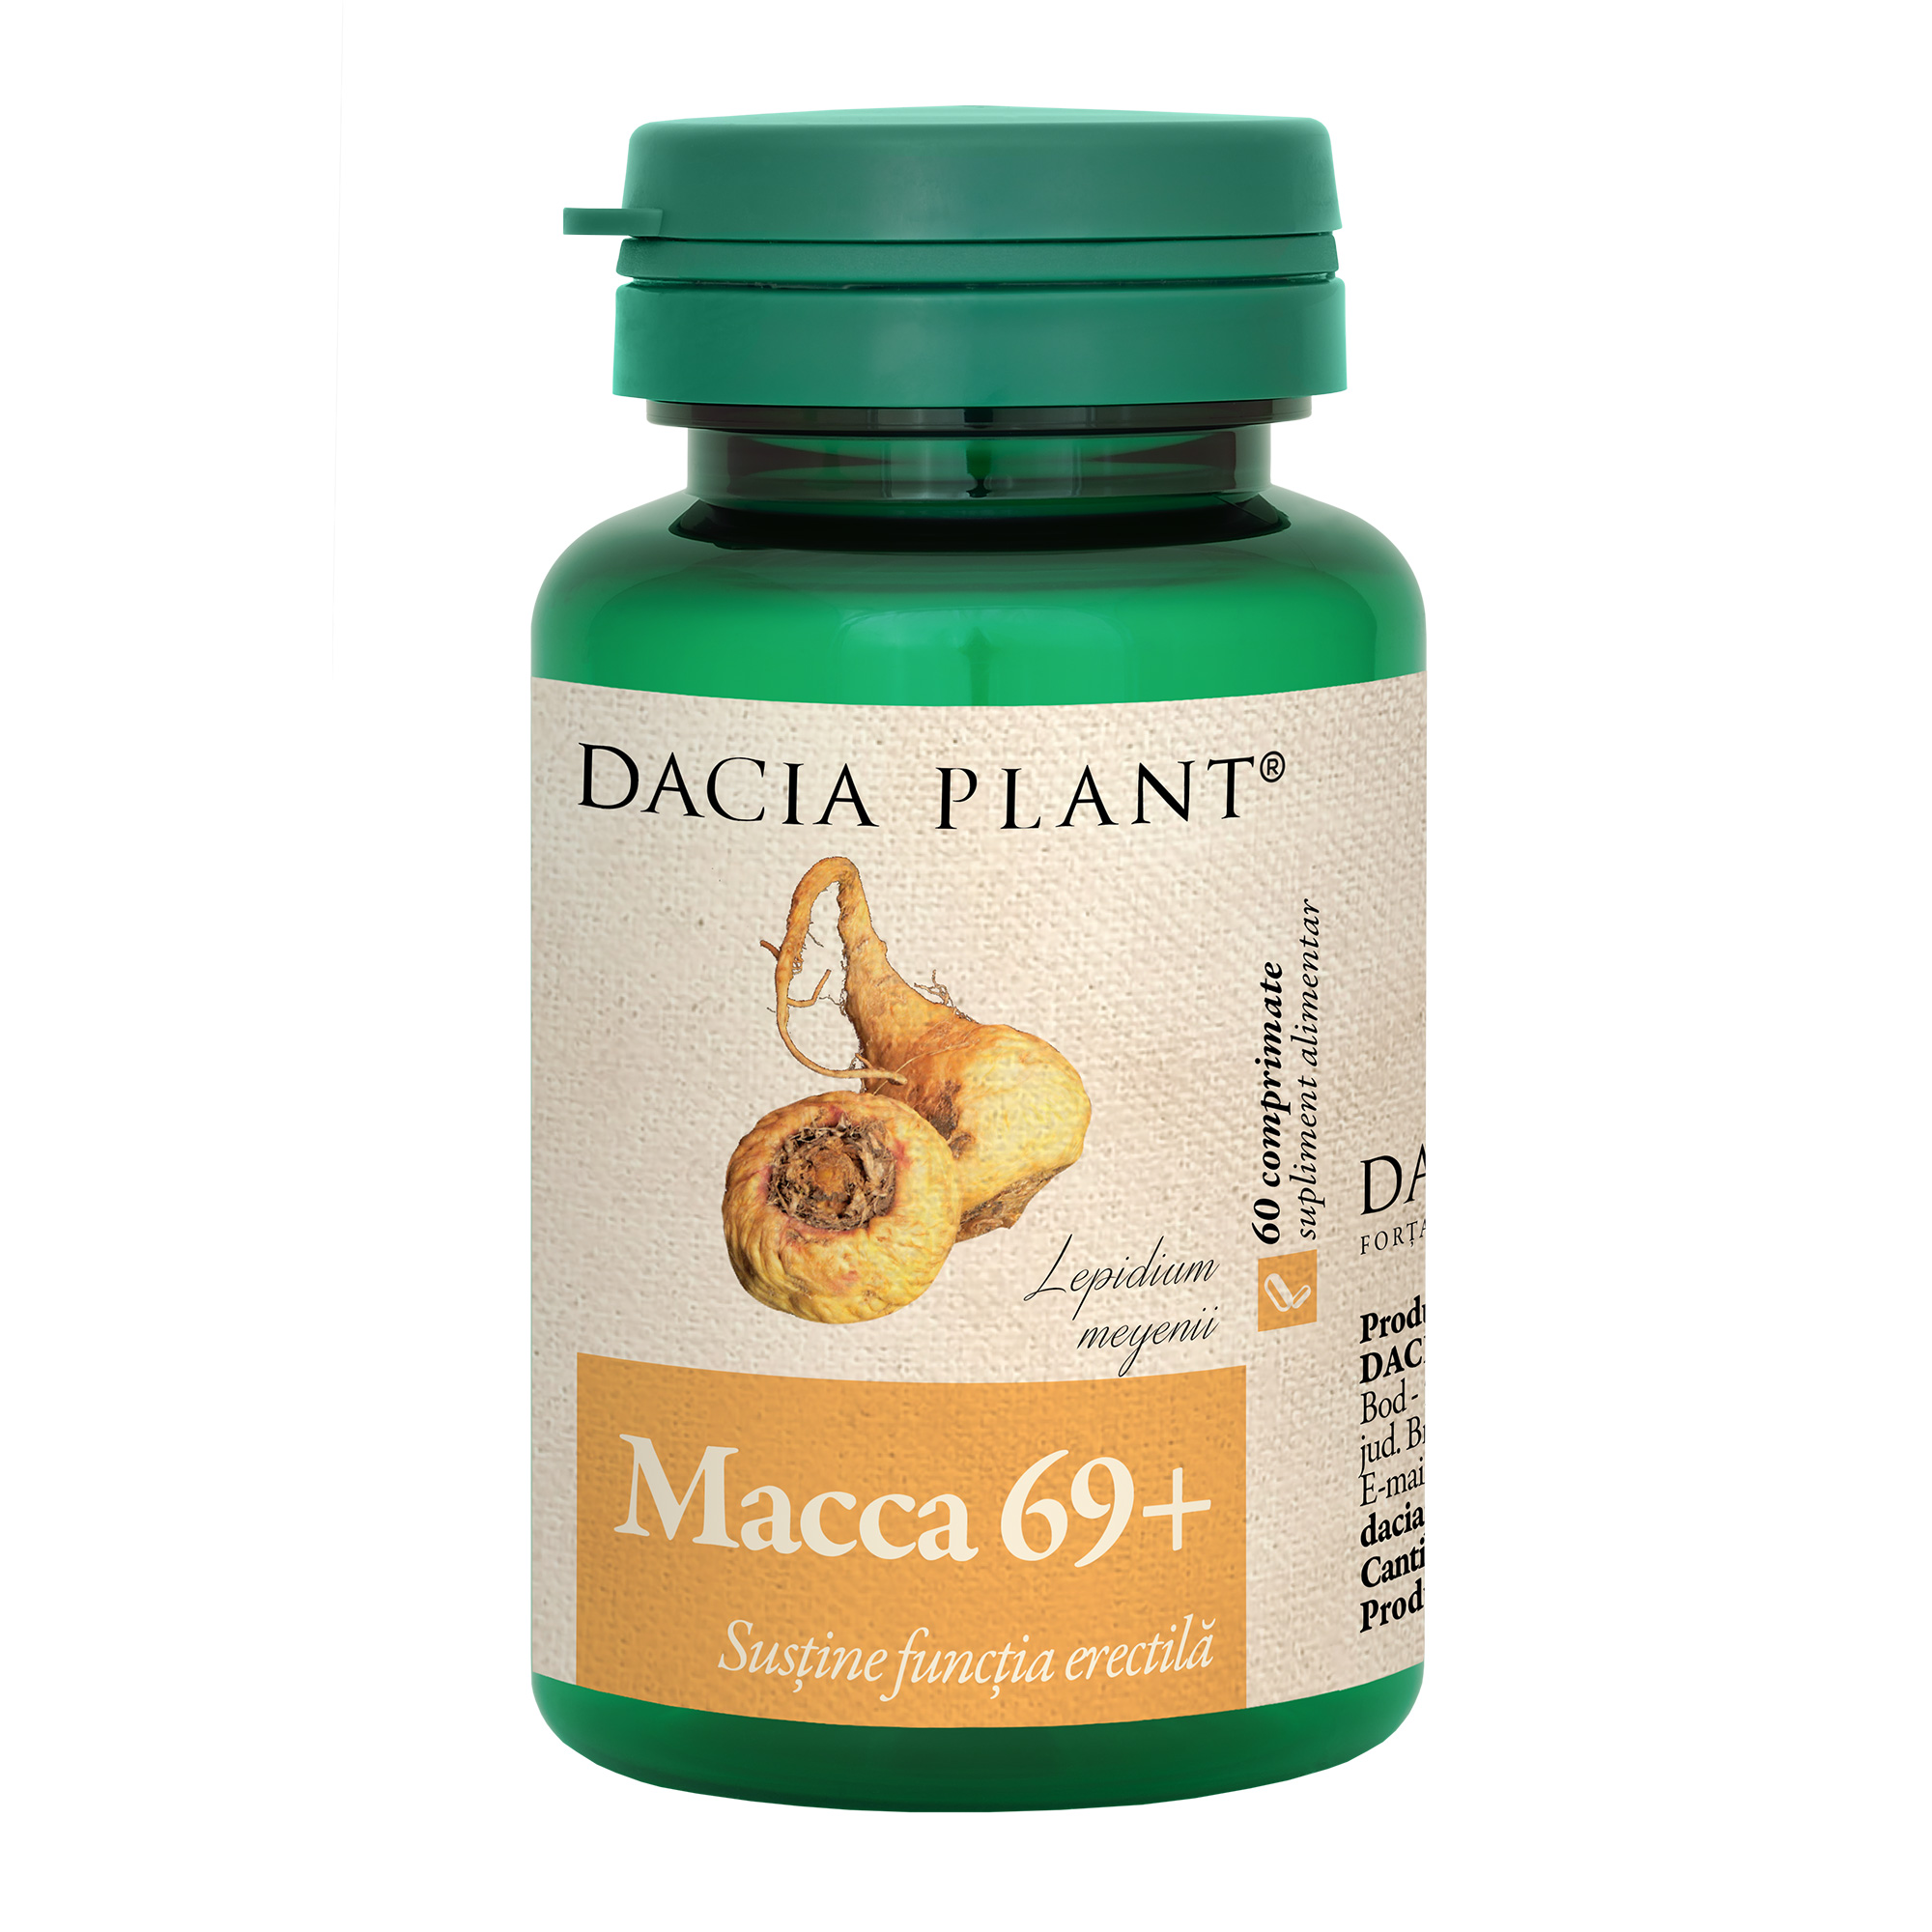 Macca 69 comprimate Dacia Plant